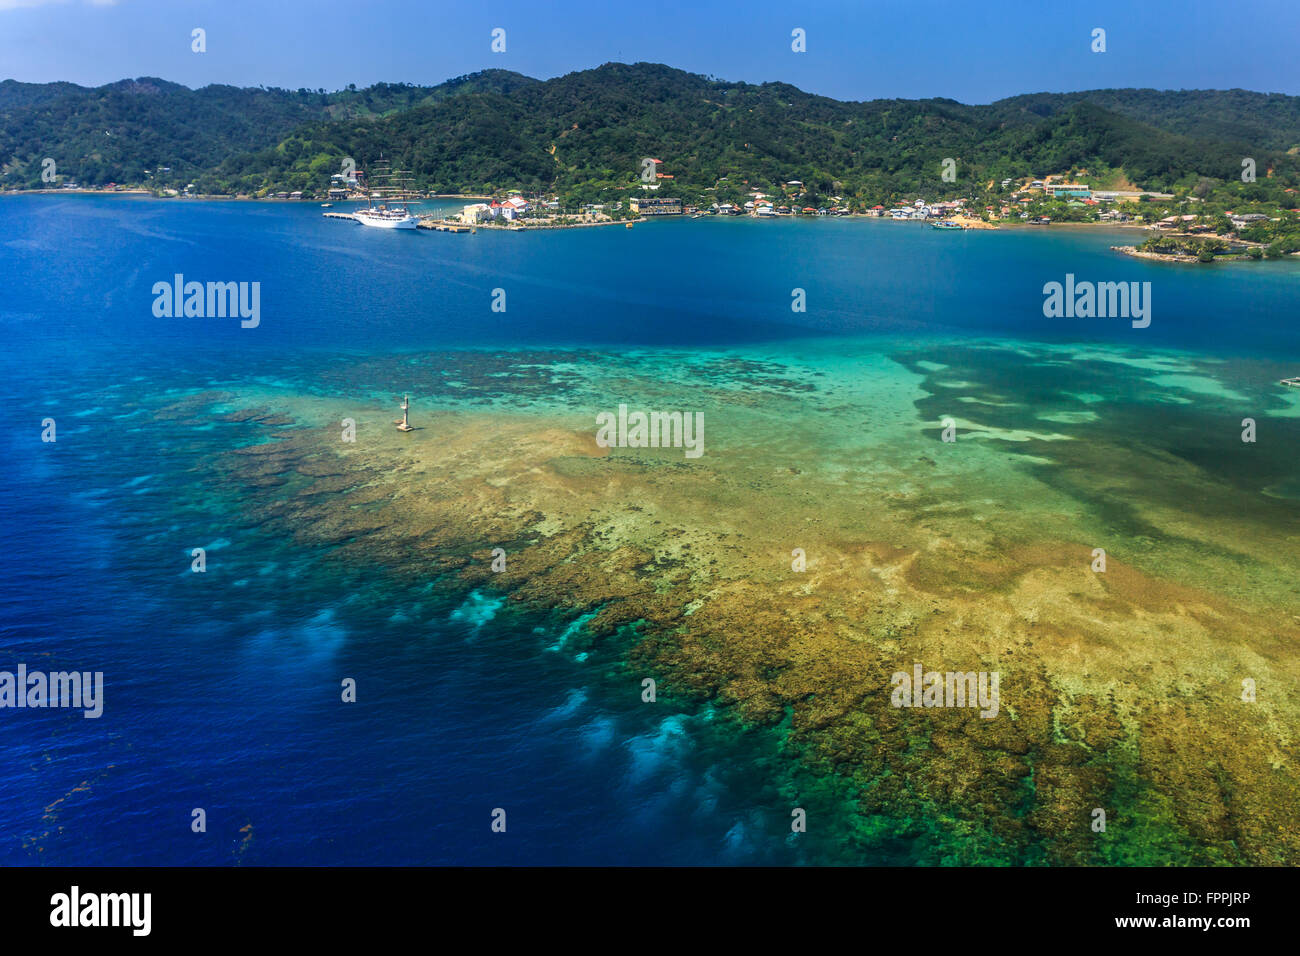 Immagine aerea della città sull'isola Roatan e atollo esterno della barriera corallina Foto Stock